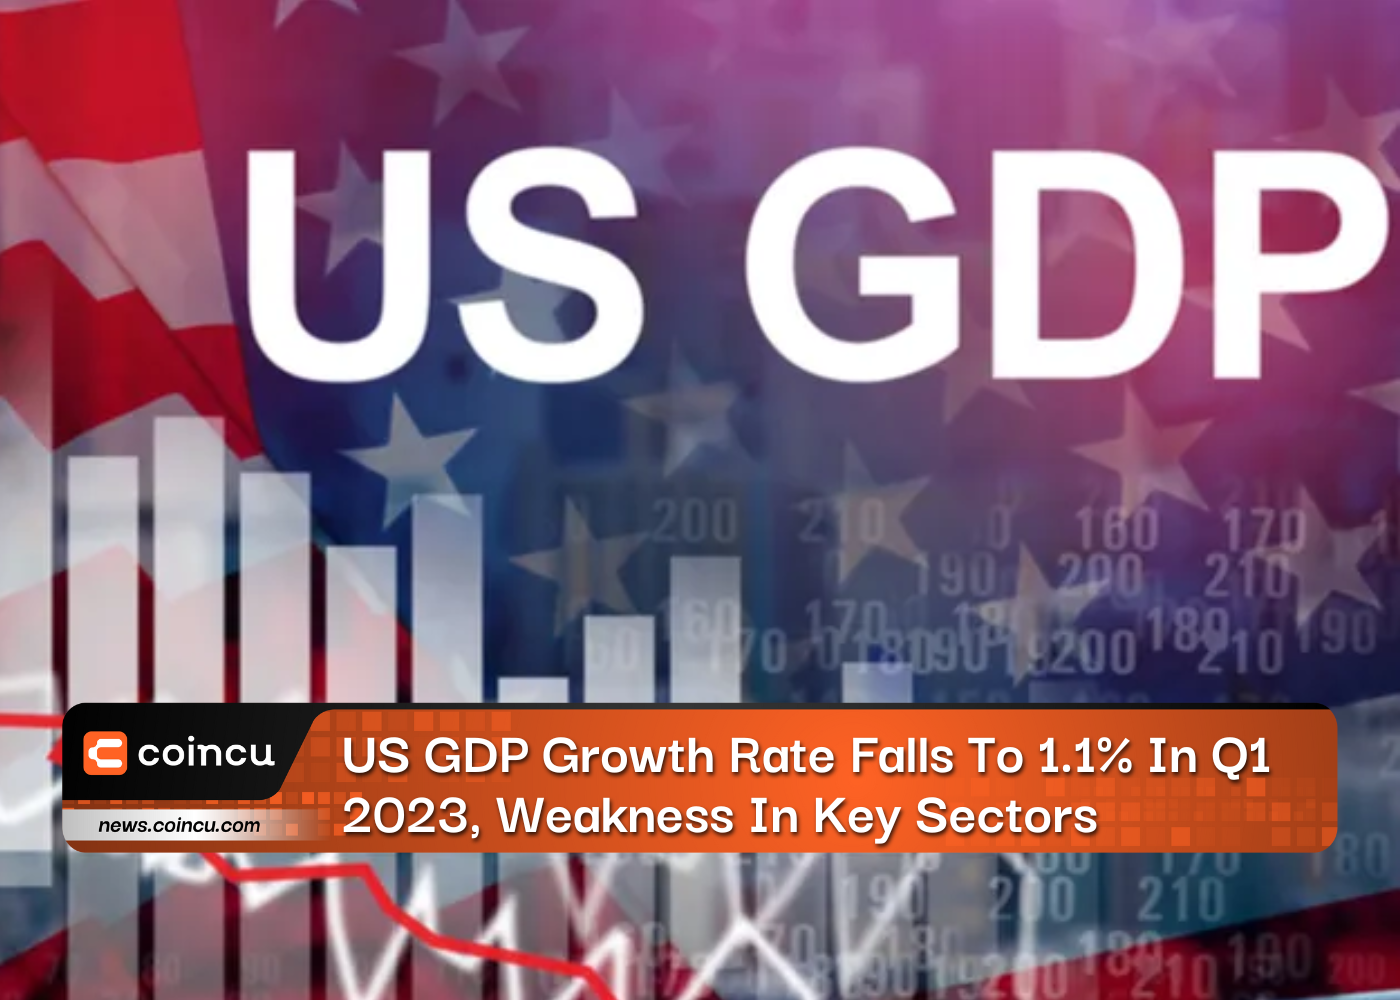 Die BIP-Wachstumsrate der USA sinkt im ersten Quartal 1.1 auf 1 %, Schwäche in Schlüsselsektoren